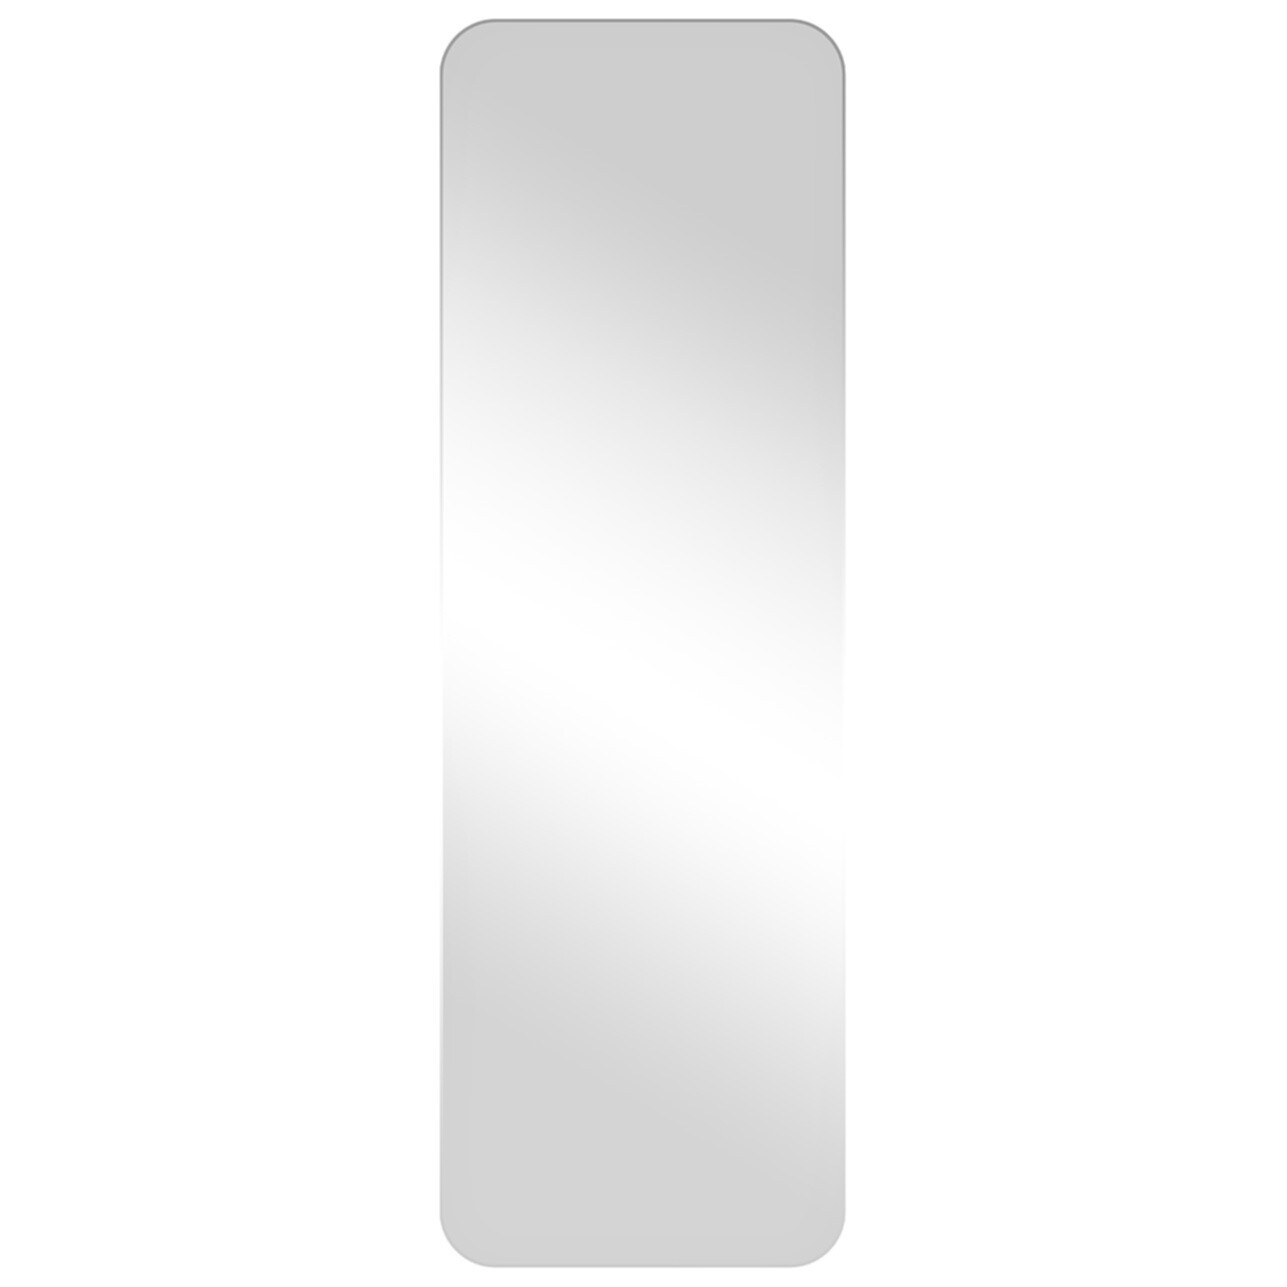 Зеркало настенное в металлической раме хром 80х160 см